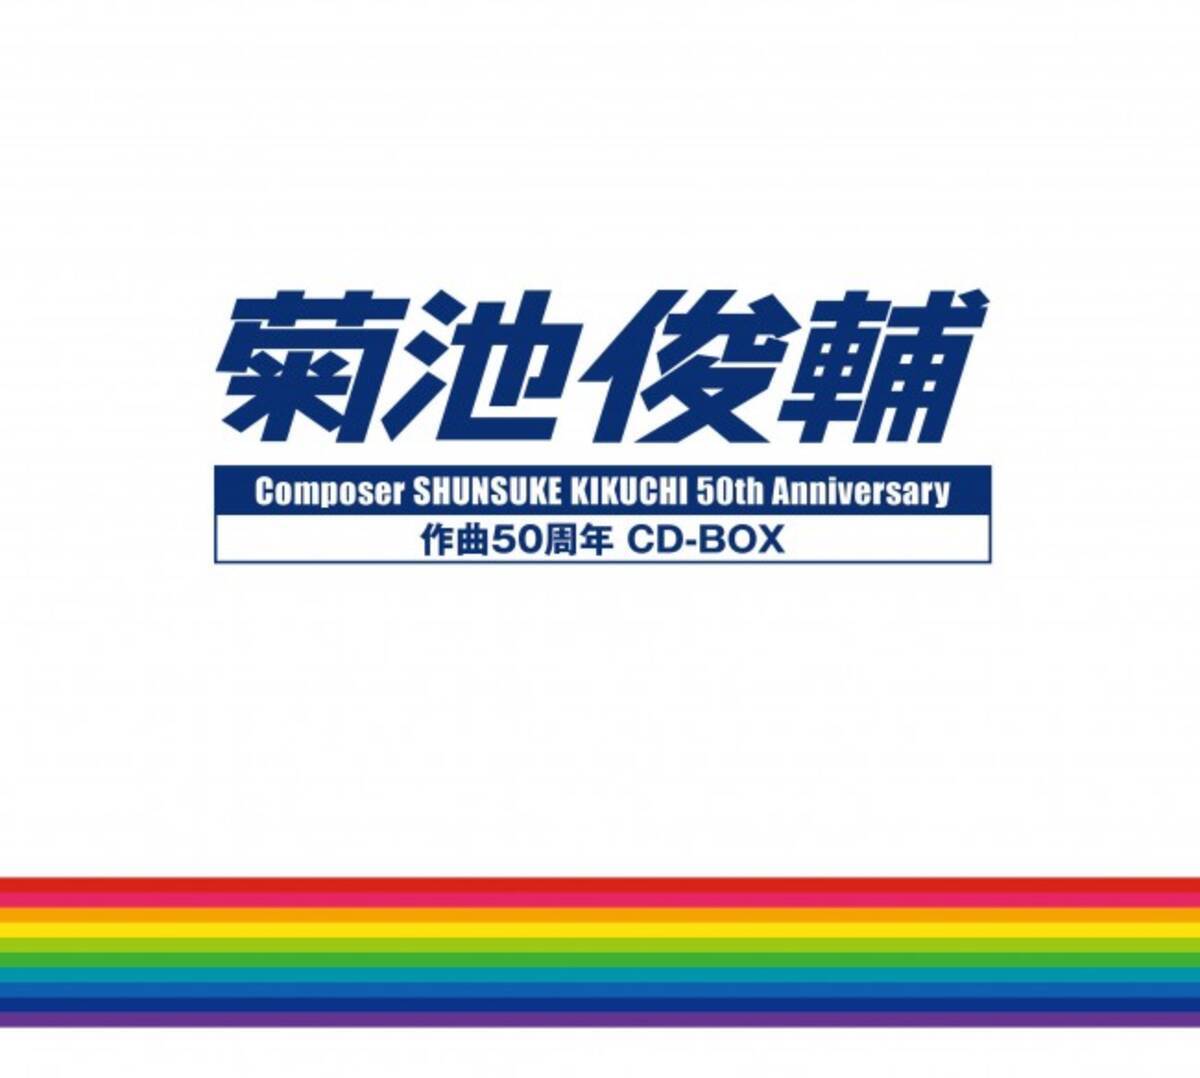 特撮 アニメの大御所作曲家 菊池俊輔の50周年記念cd Boxに2曲収録 12年11月16日 エキサイトニュース